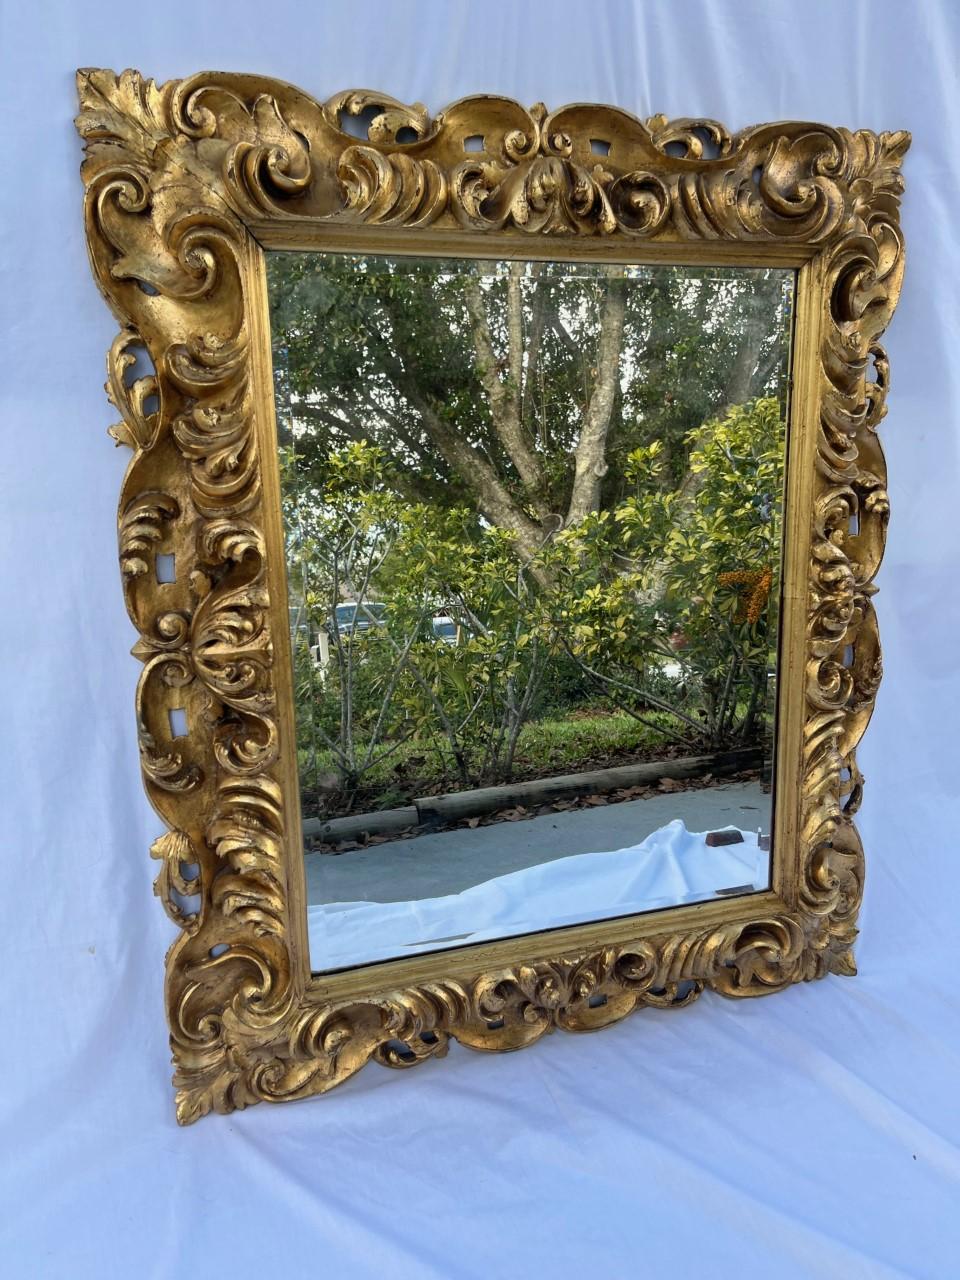 Fin du 18e siècle Baroque Florentine Miroir en bois doré sculpté à la main

Grand miroir spectaculaire d'époque baroque de la fin du XVIIIe siècle, cadre en bois doré feuillagé abondamment sculpté à la main. Cet artisan a utilisé la technique